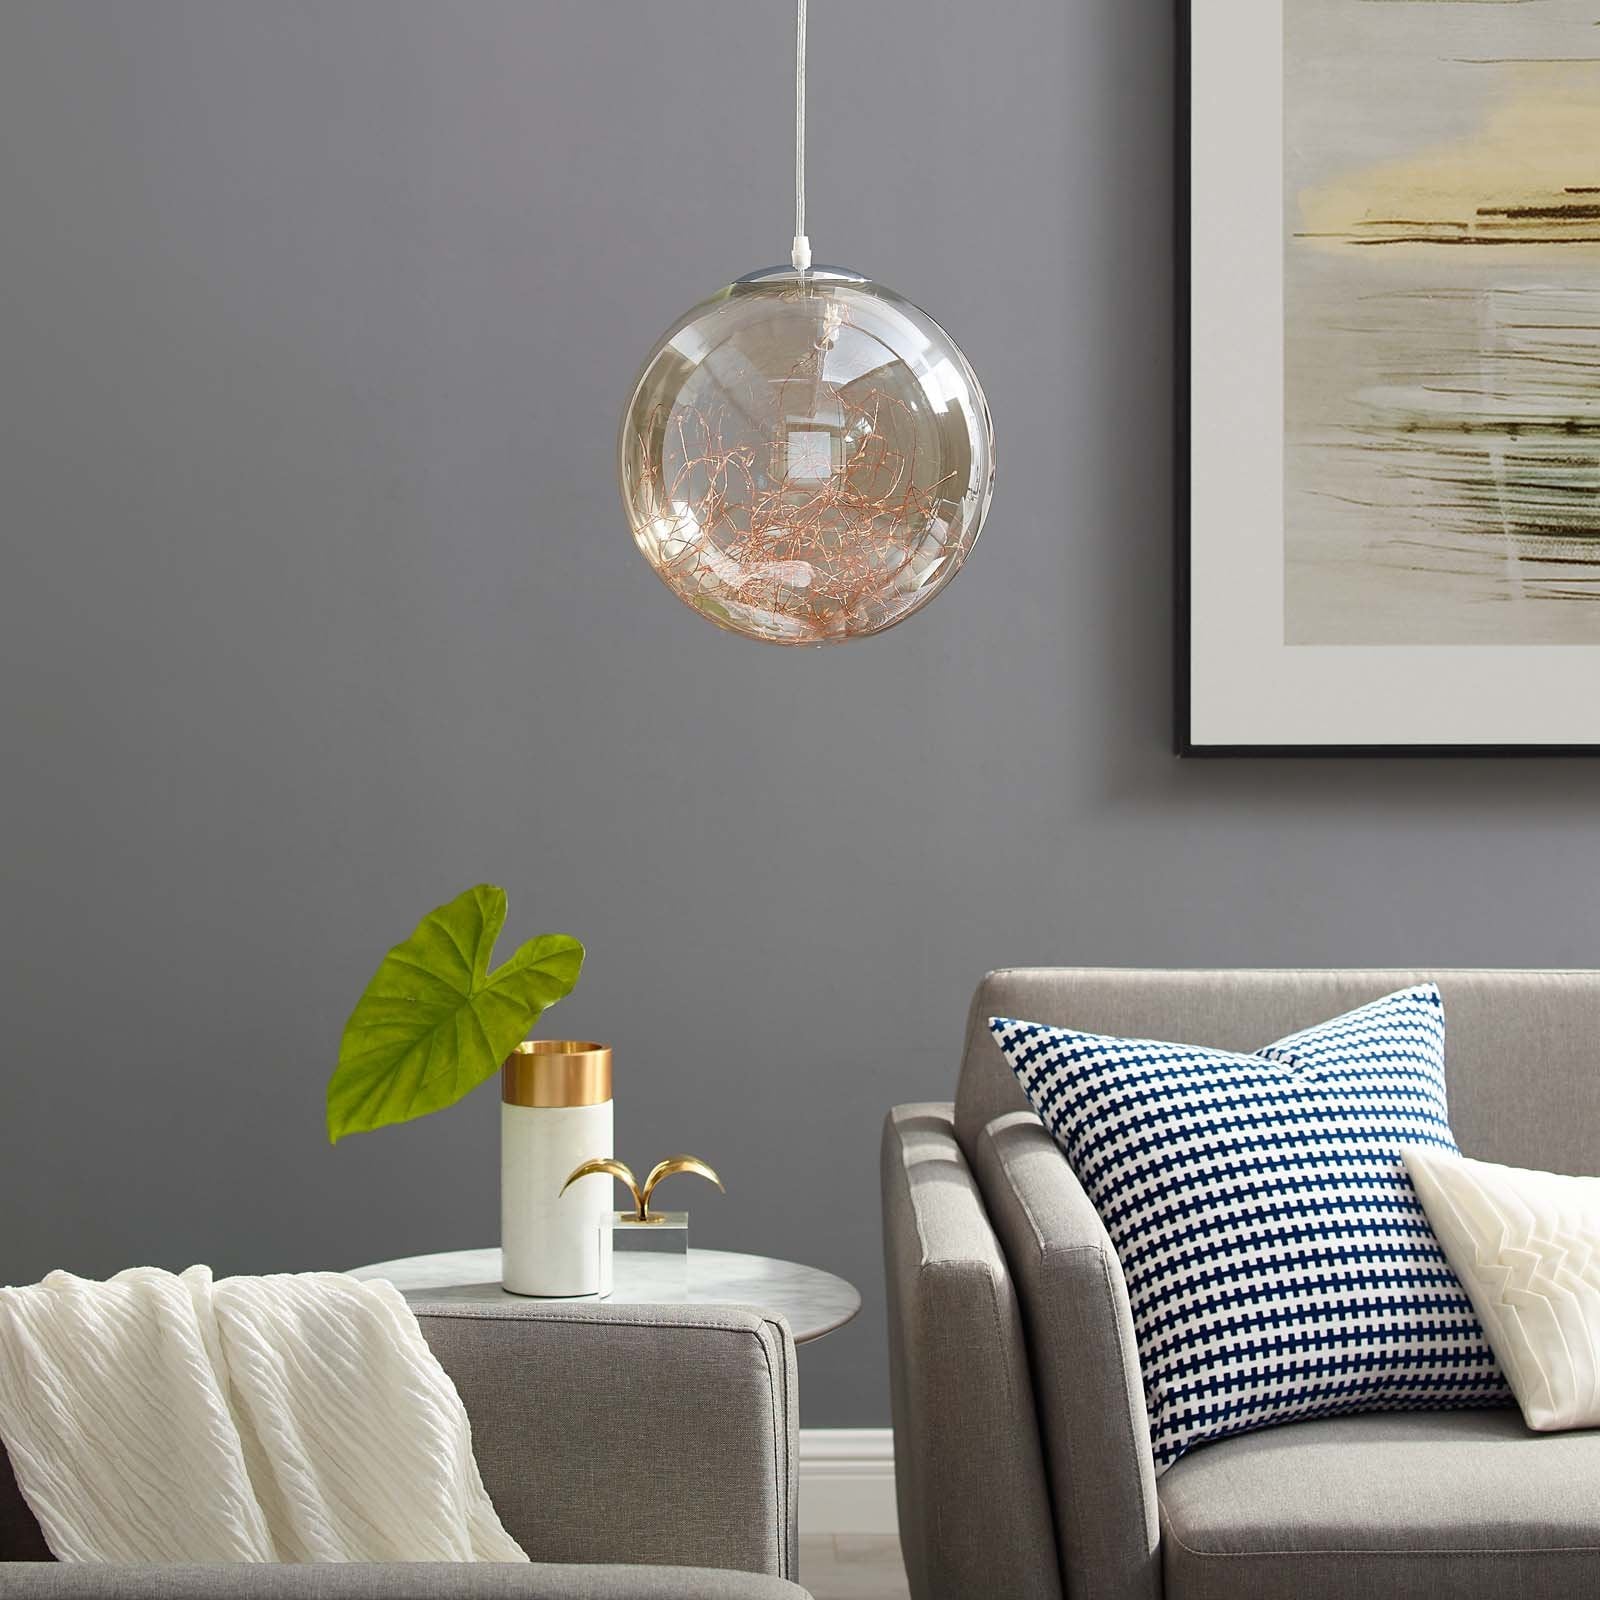 Fairy 8" Amber Glass Globe Ceiling Light Pendant Chandelier - East Shore Modern Home Furnishings